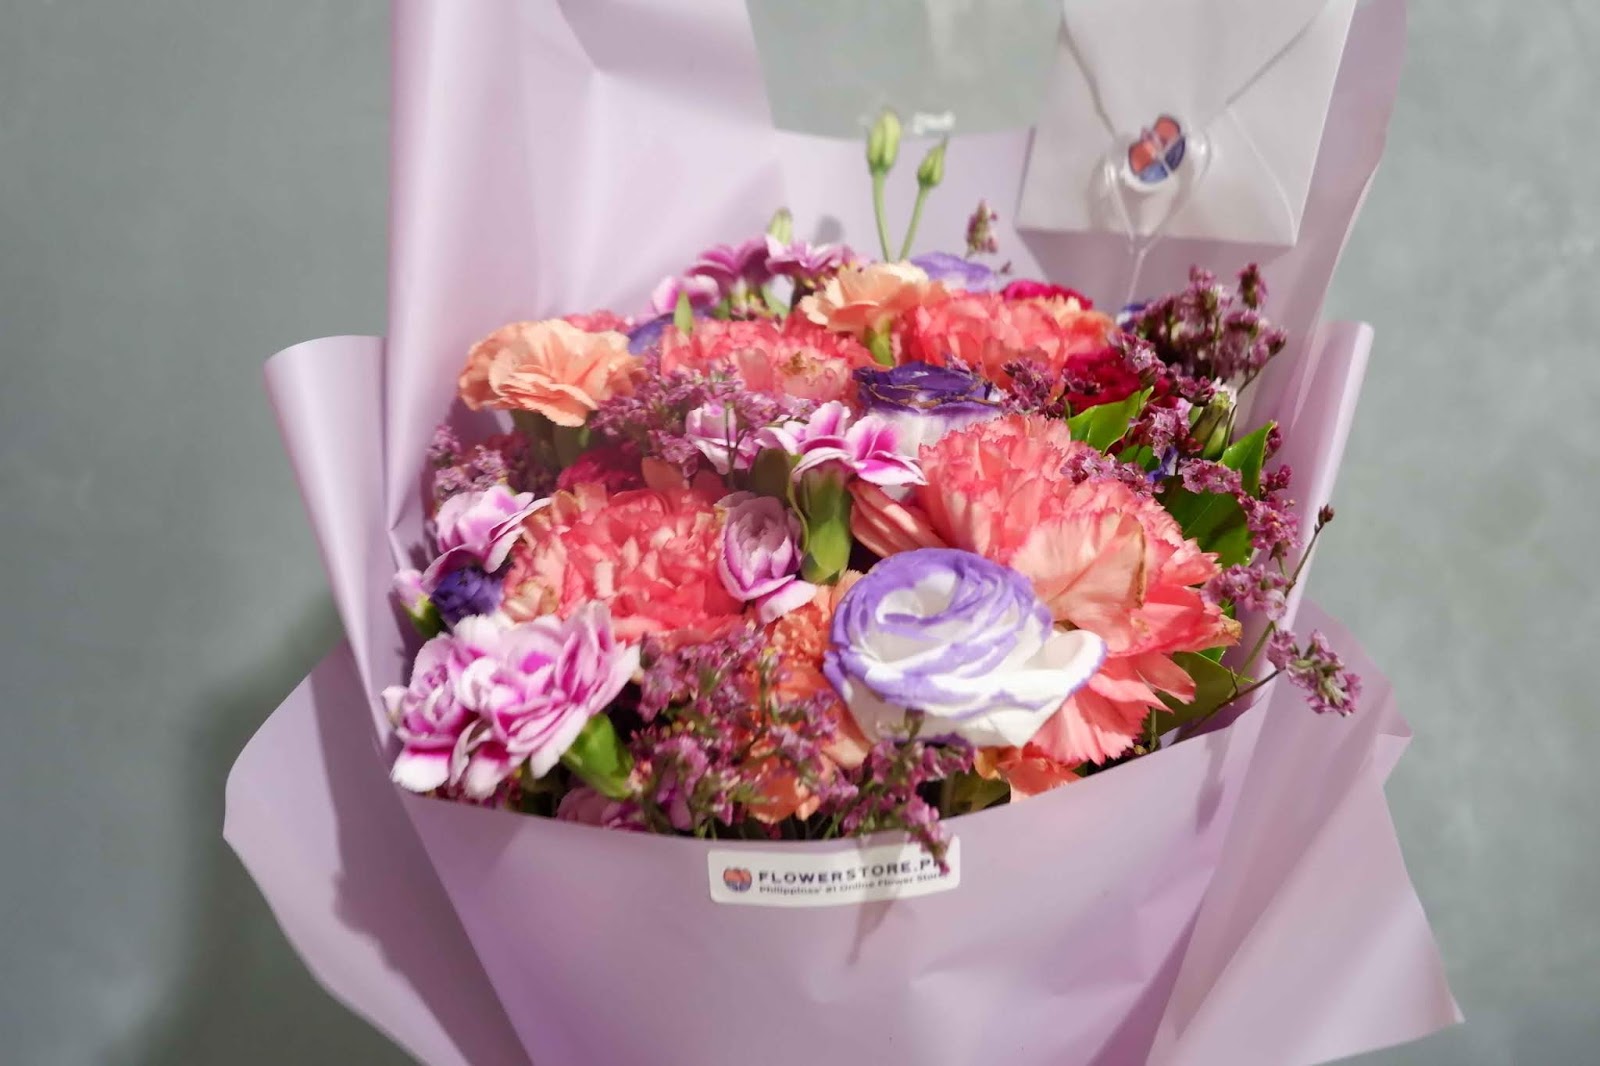 5 shop hoa đẹp ở Hà Nội cho 20/10: Từ 300k là sắm được bó hoa xinh, ưu đãi ít nhất 20% - Ảnh 3.